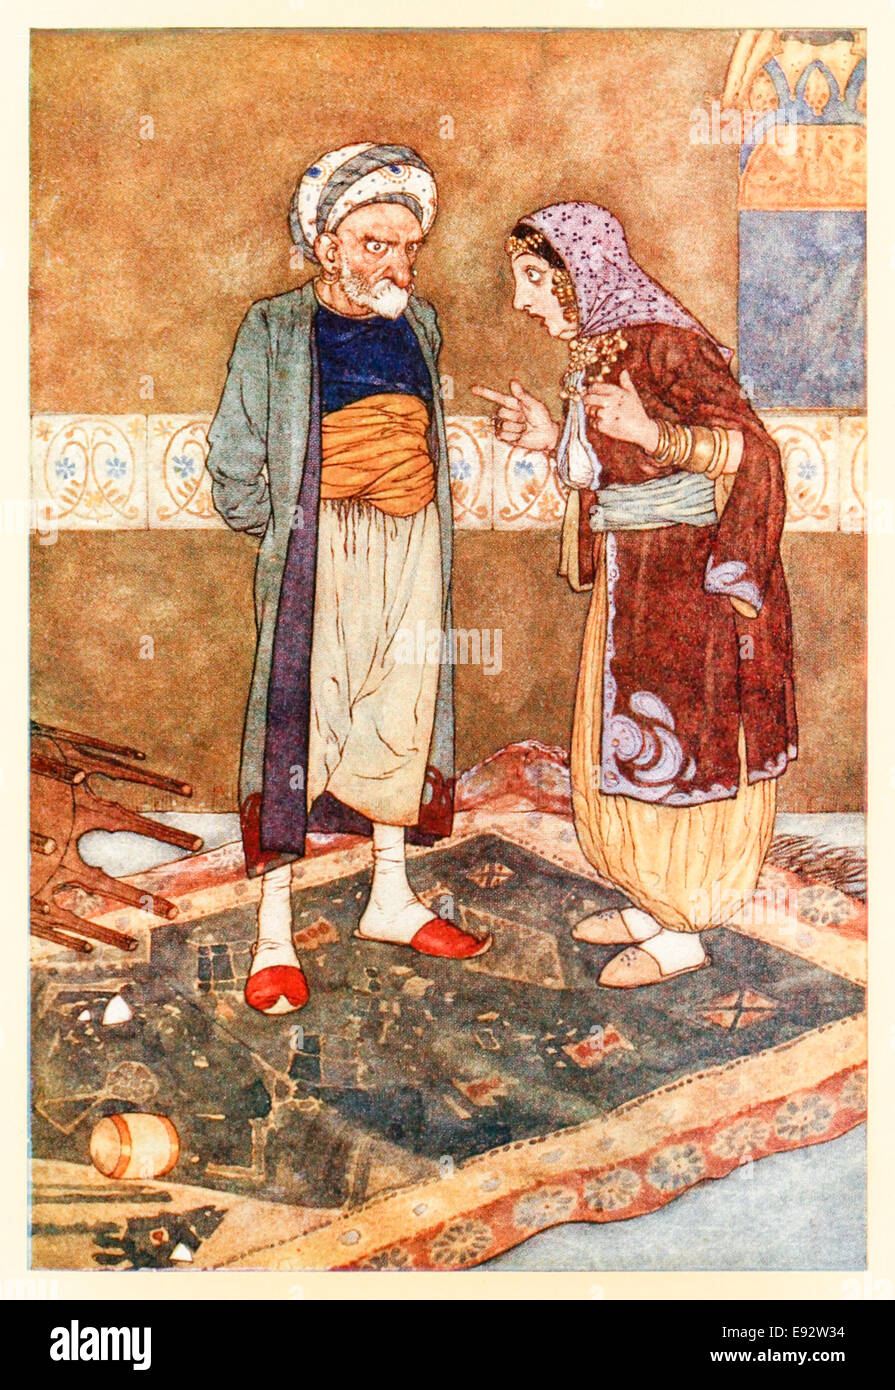 Edmund Dulac illustration de 'Ali Baba et les quarante voleurs' dans 'Stories de l'Arabian Nights'. Voir la description pour plus d'informations Banque D'Images